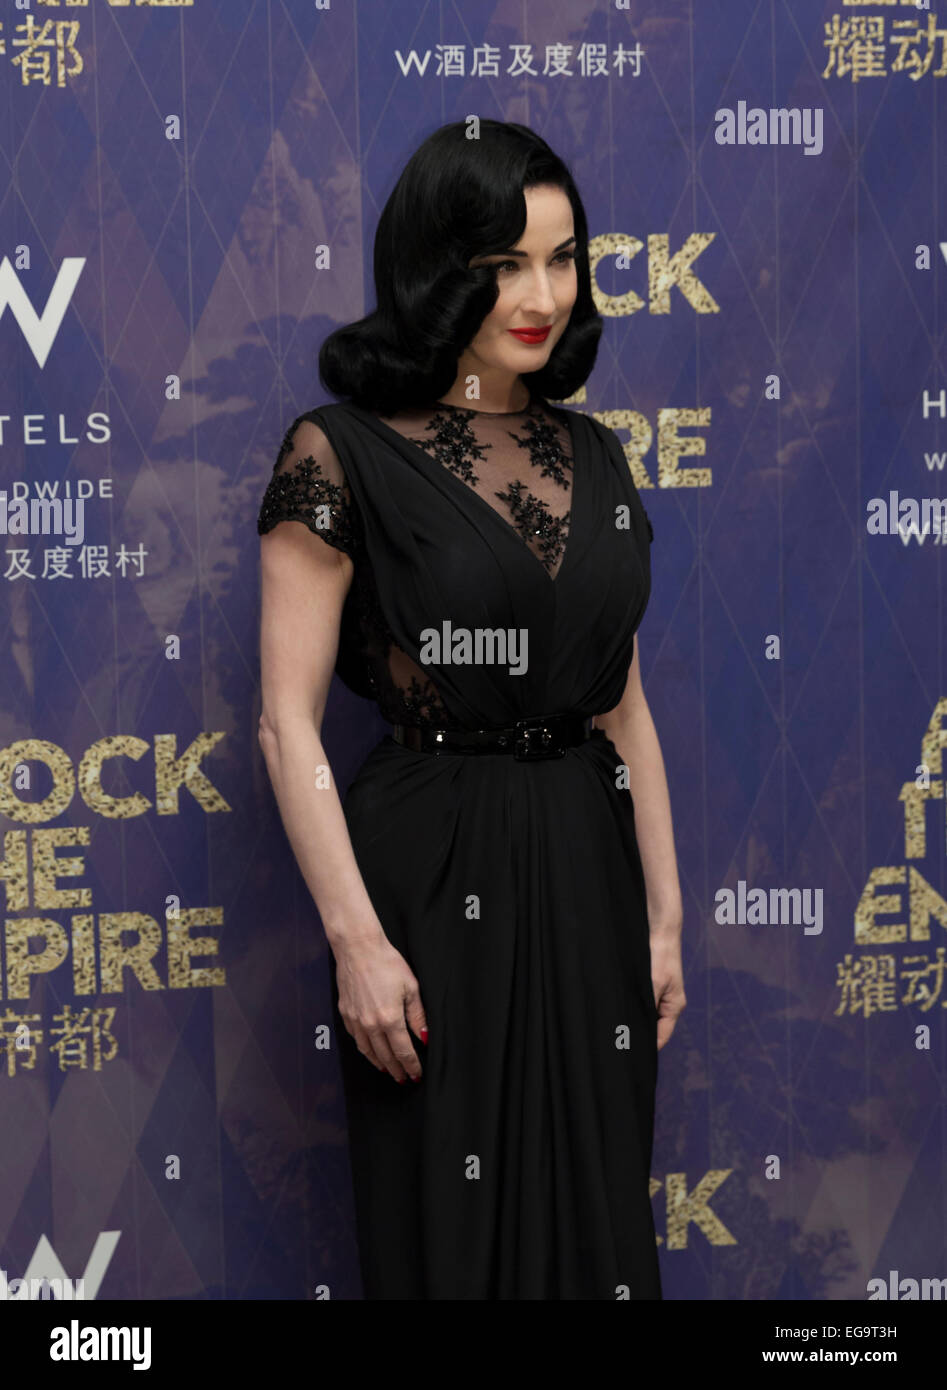 NEW YORK, NY - 19 février 2015 : Dita Von Teese assiste à W Hotels le coup de 'l'empire mondial Rock' tournée pour célébrer l'ouverture de W W New York à Beijing Banque D'Images